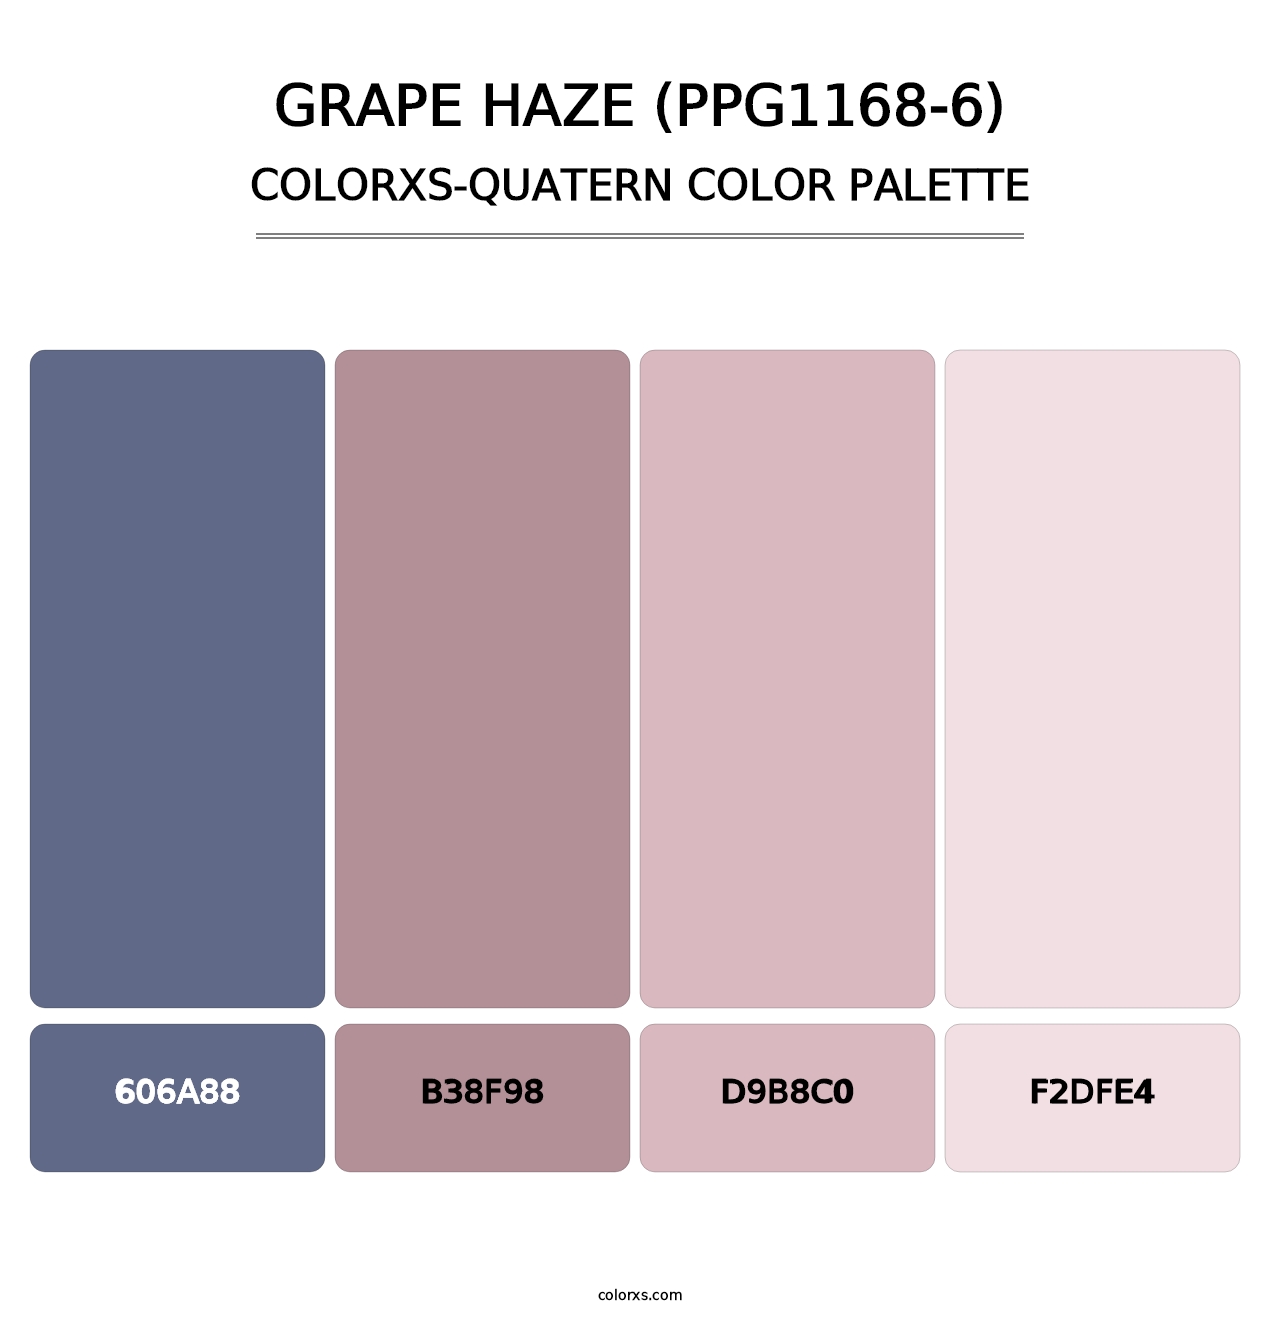 Grape Haze (PPG1168-6) - Colorxs Quatern Palette